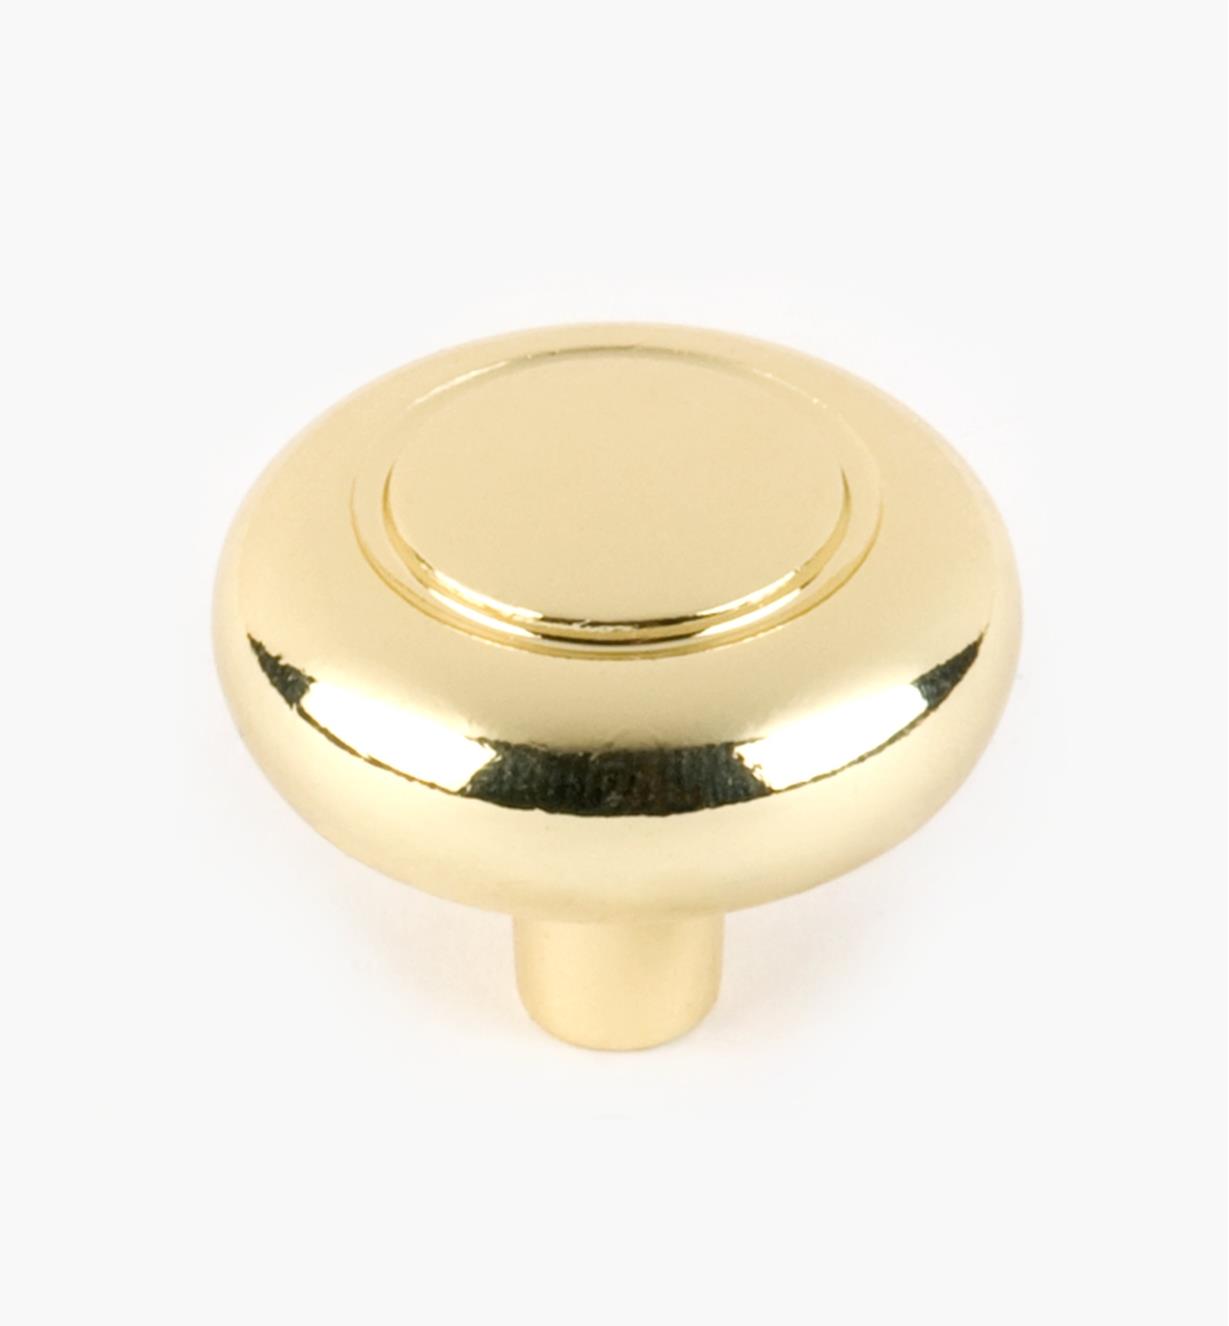 03W2360 - 1 1/4" x 1" Brass Plate Eclipse Knob, each